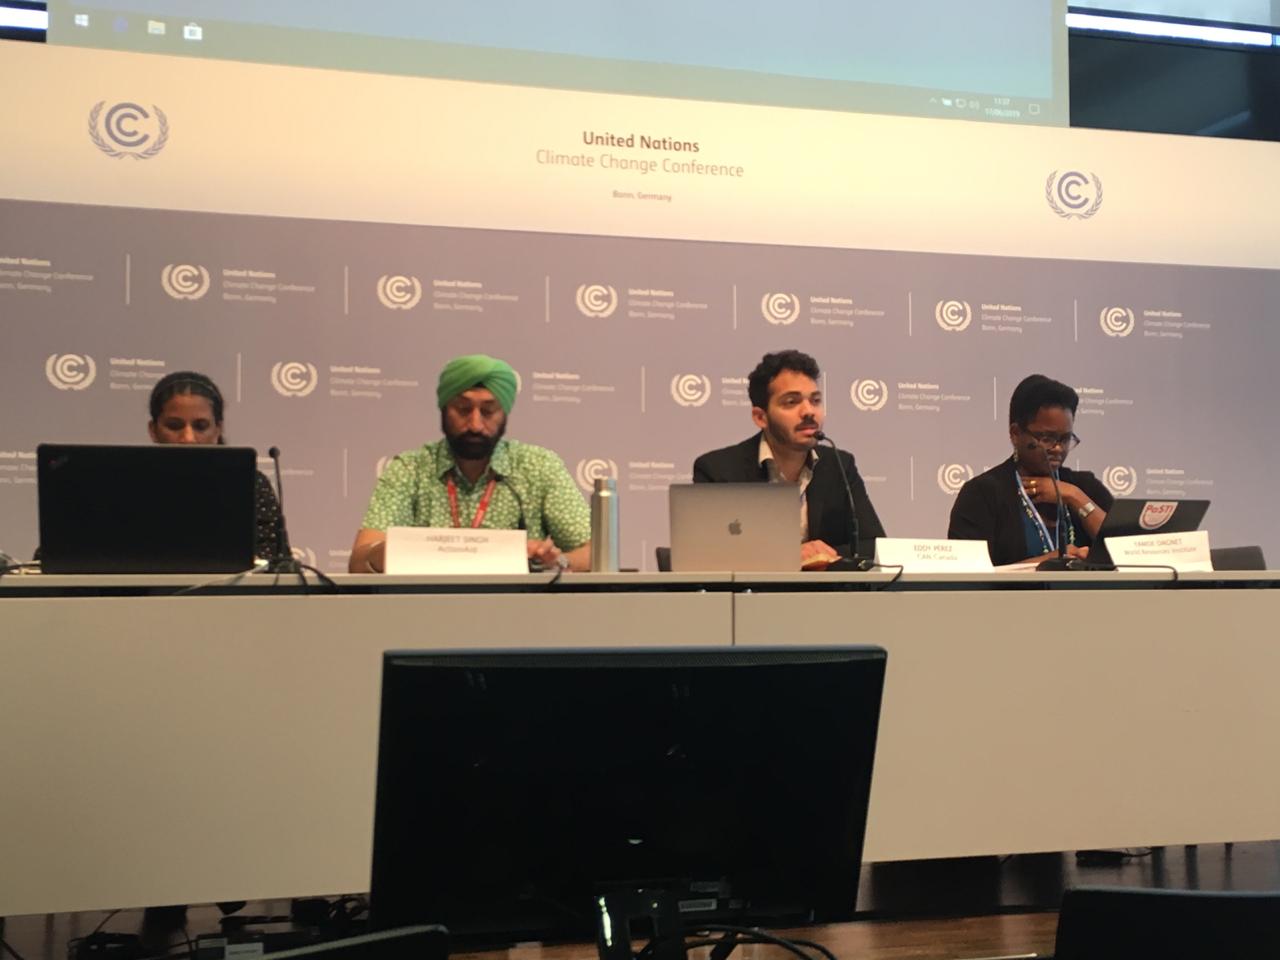 Ambición y mercados son las prioridades de la cumbre climática que inicia hoy en Bonn